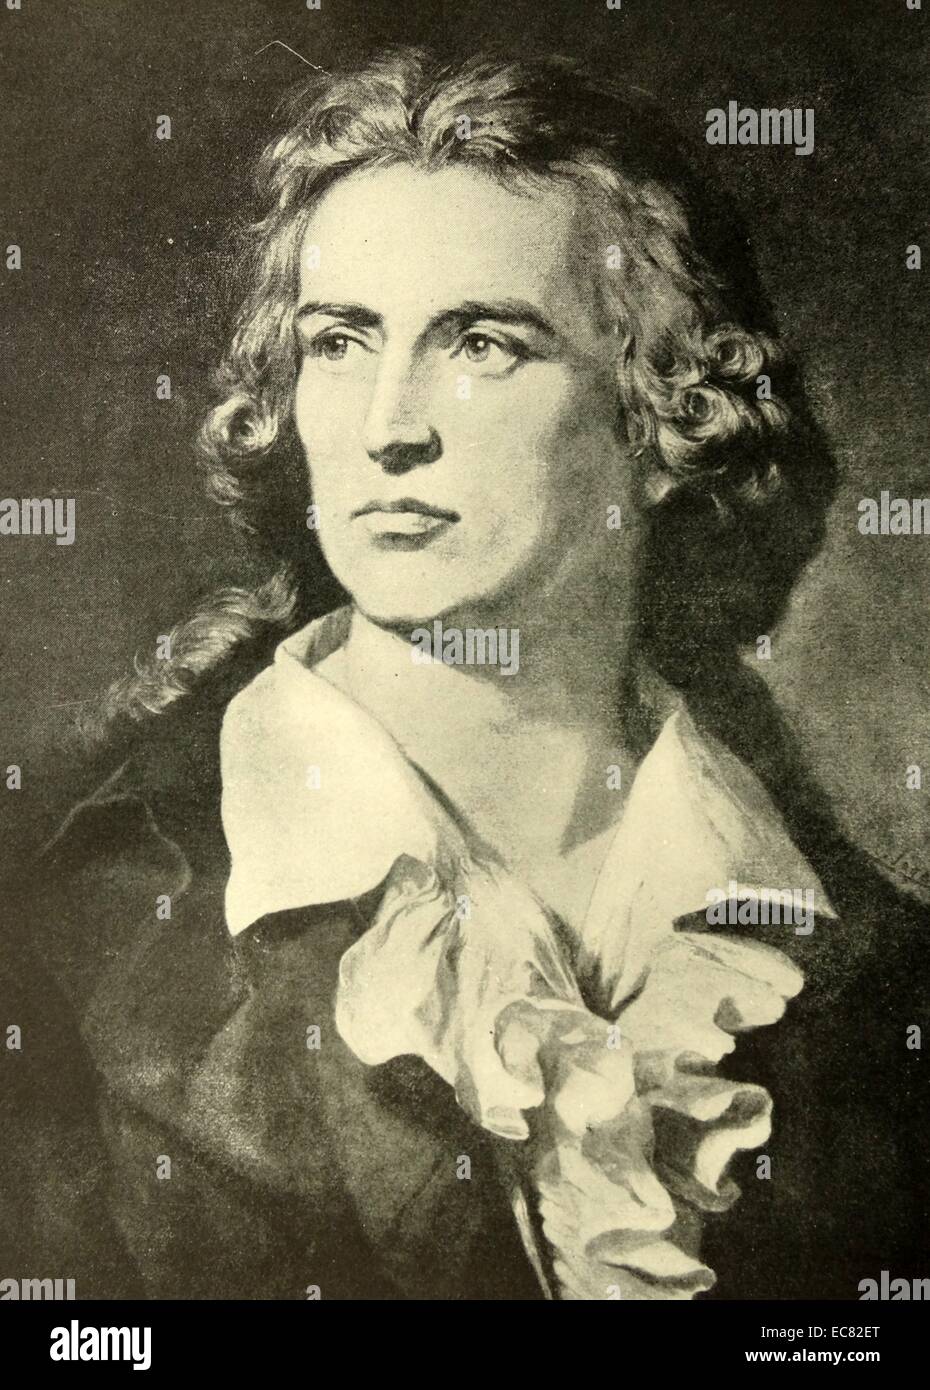 Portrait de Friedrich Schiller (1759-1805) poète allemand, philosophe, historien et auteur dramatique. Datée 1793 Banque D'Images